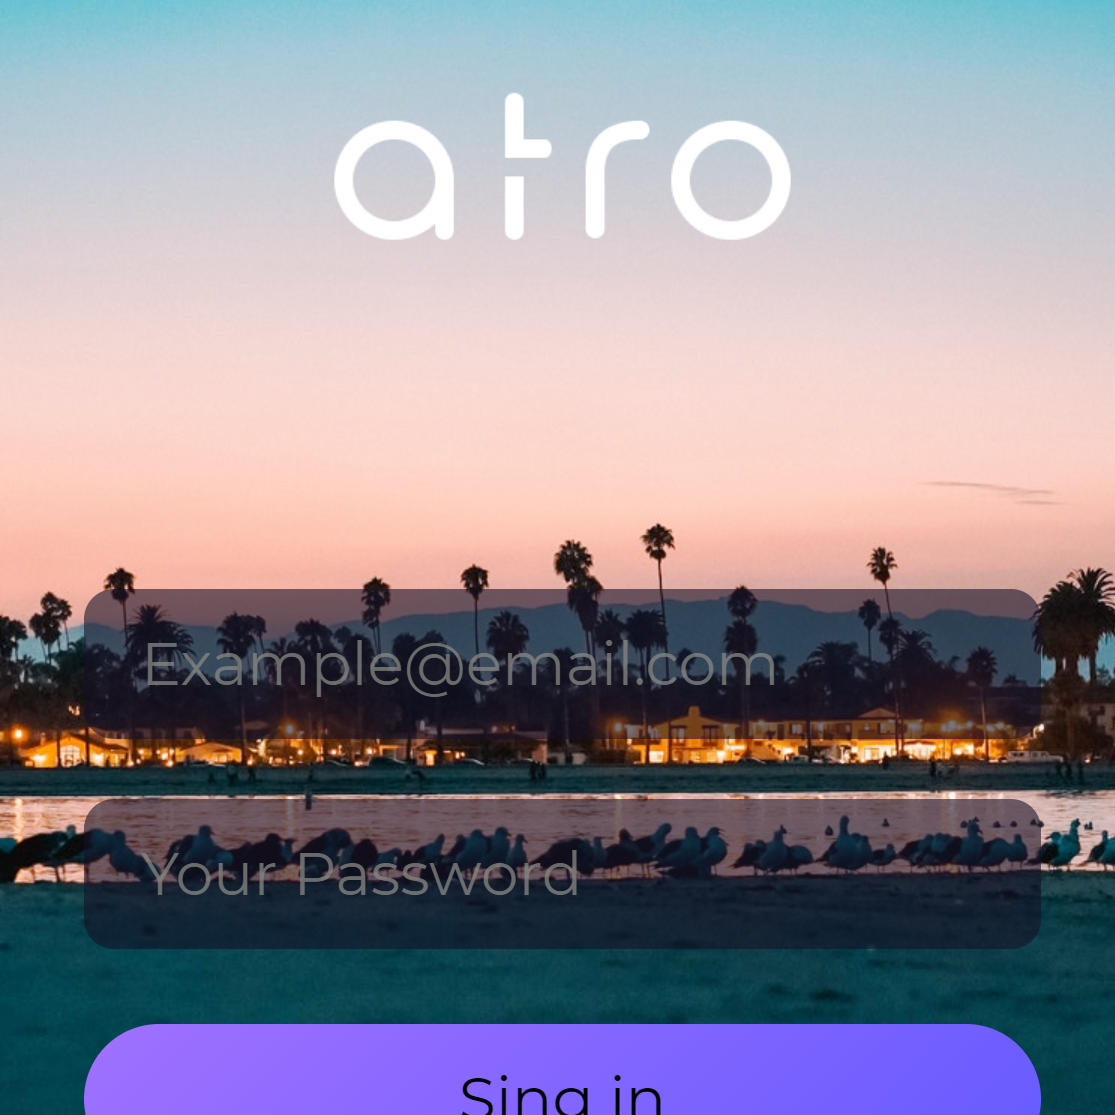 Atro-Interface